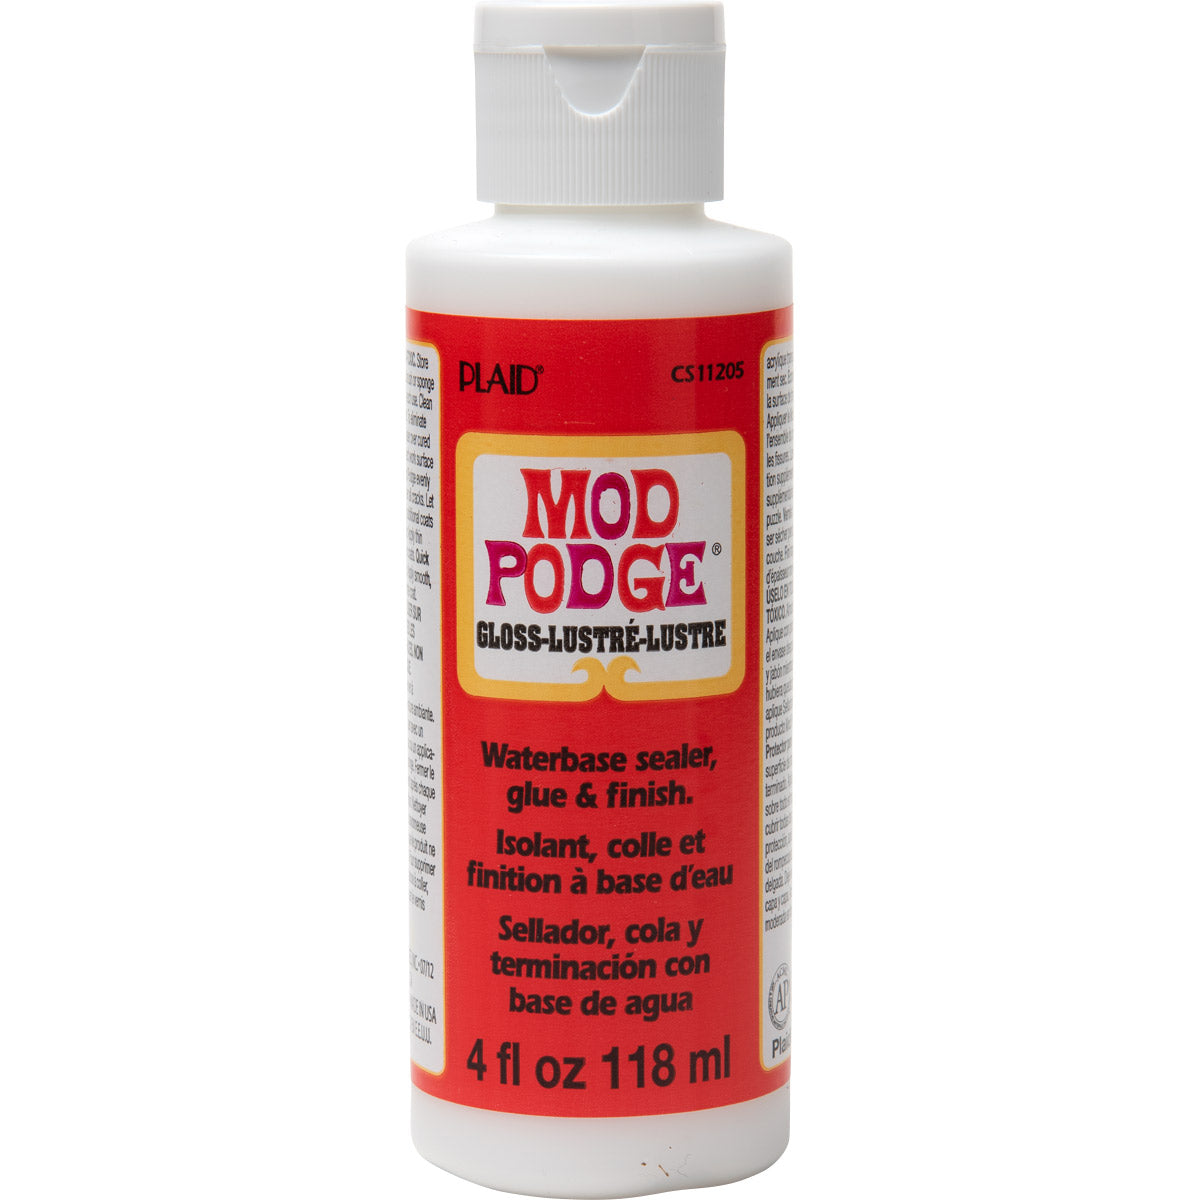 Mod Podge ® Gloss, 4 oz. - CS11205